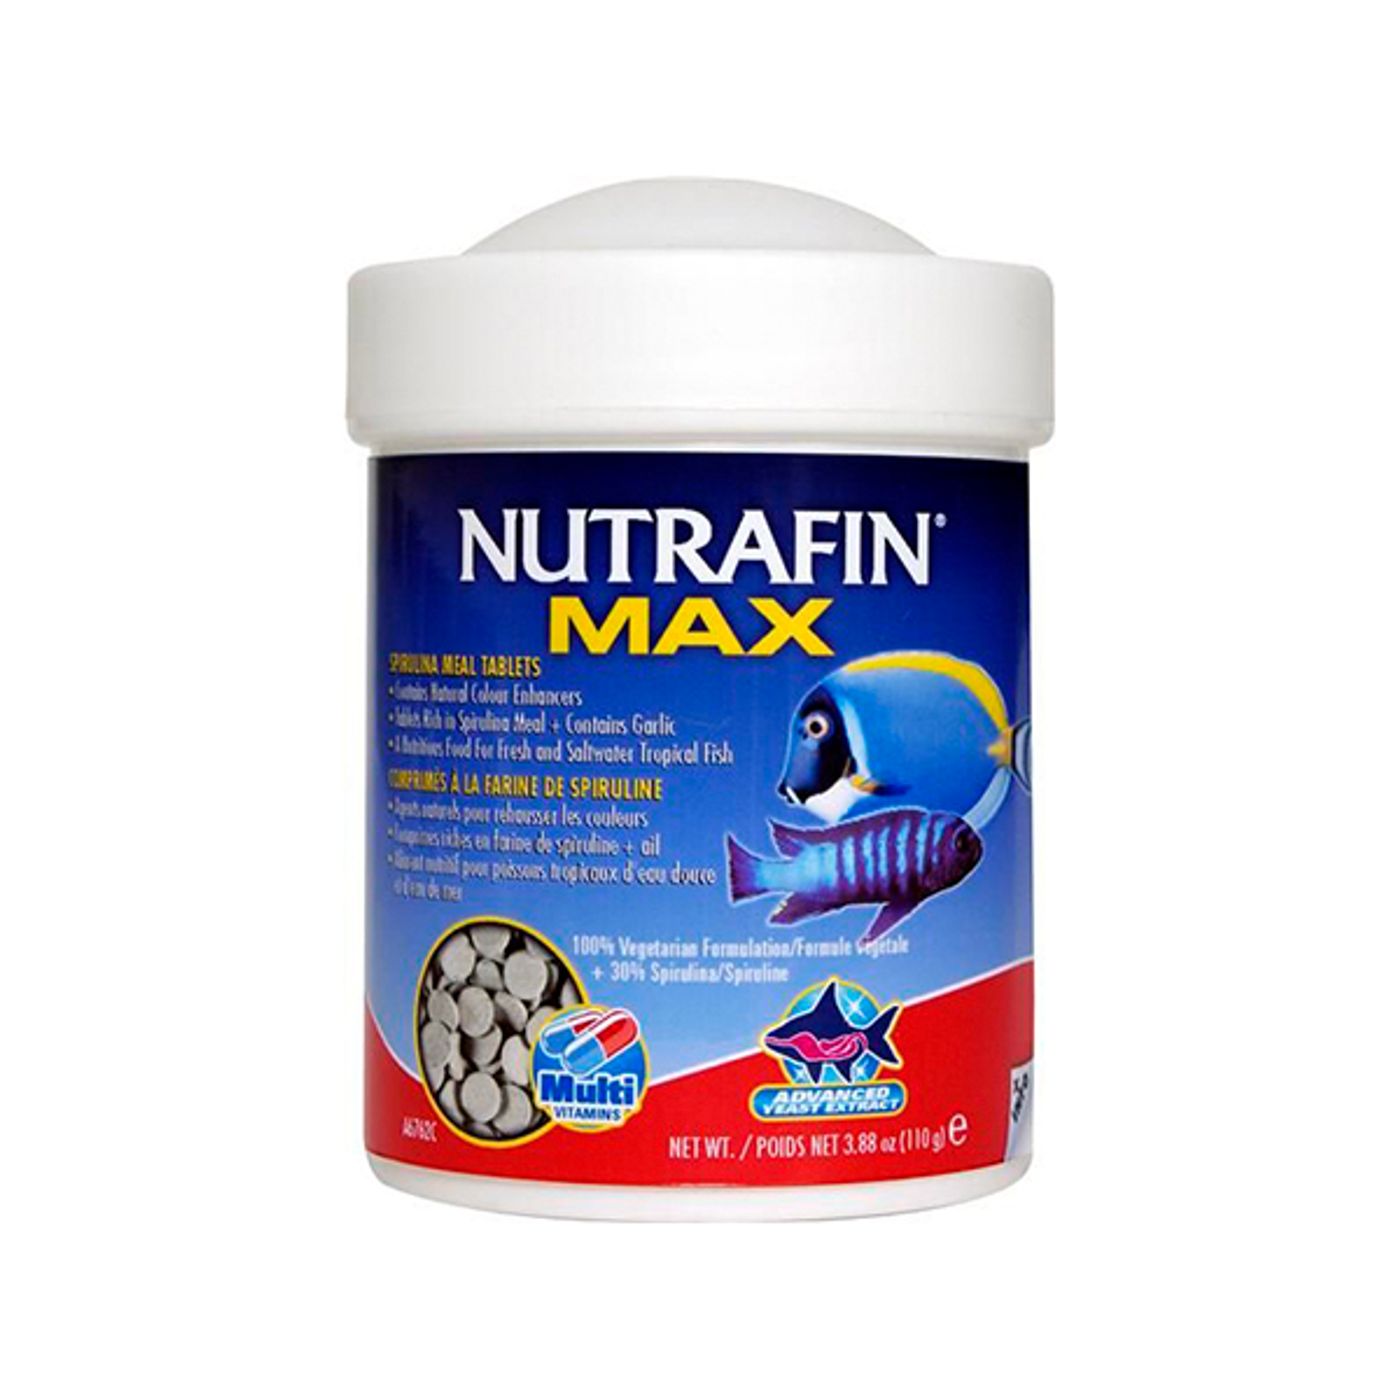 NUTRAFIN-Max-Pastilhas-de-Spirulina